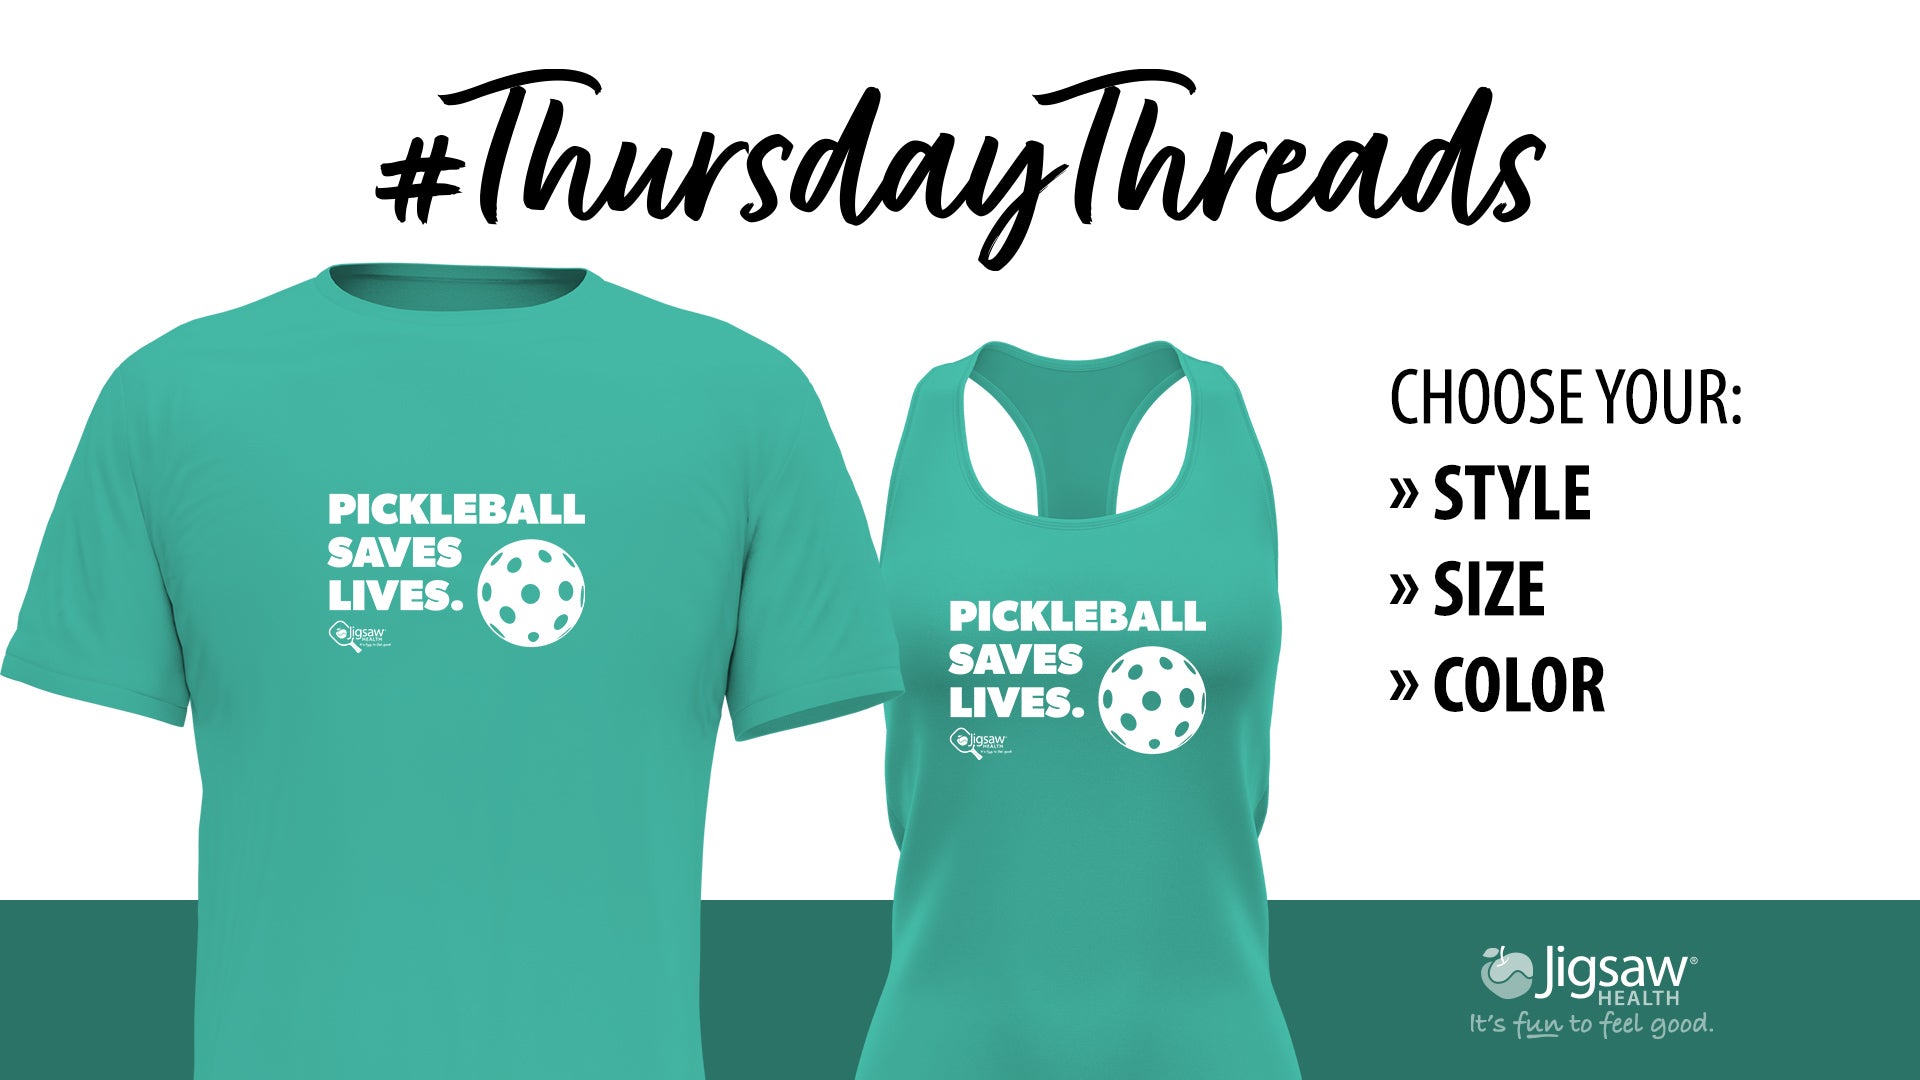 Pickleball Saves Lives. | #ThursdayThreads